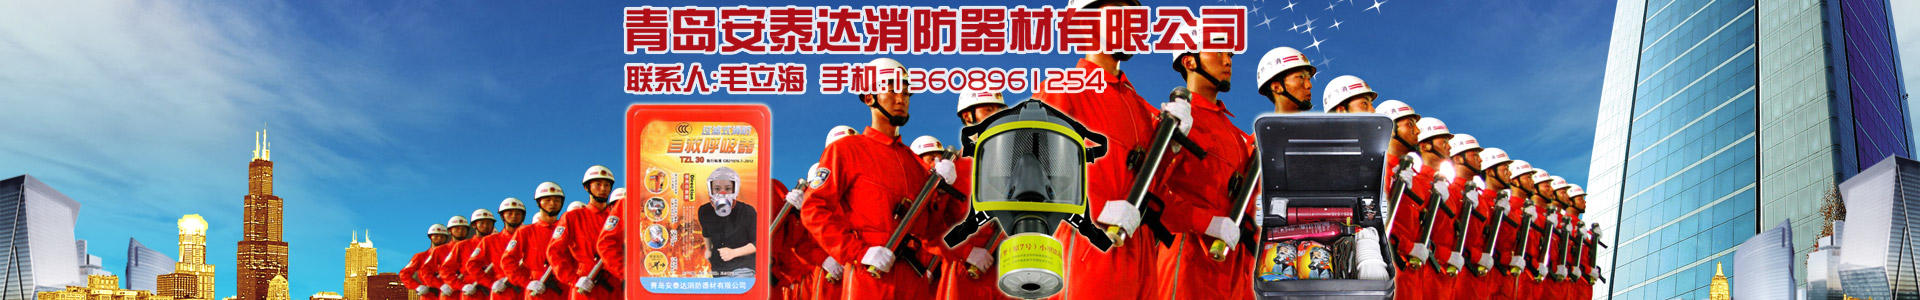 TZL30过滤式自救呼吸器(主型）-消防过滤式自救呼吸器-青岛安泰达消防器材有限公司-